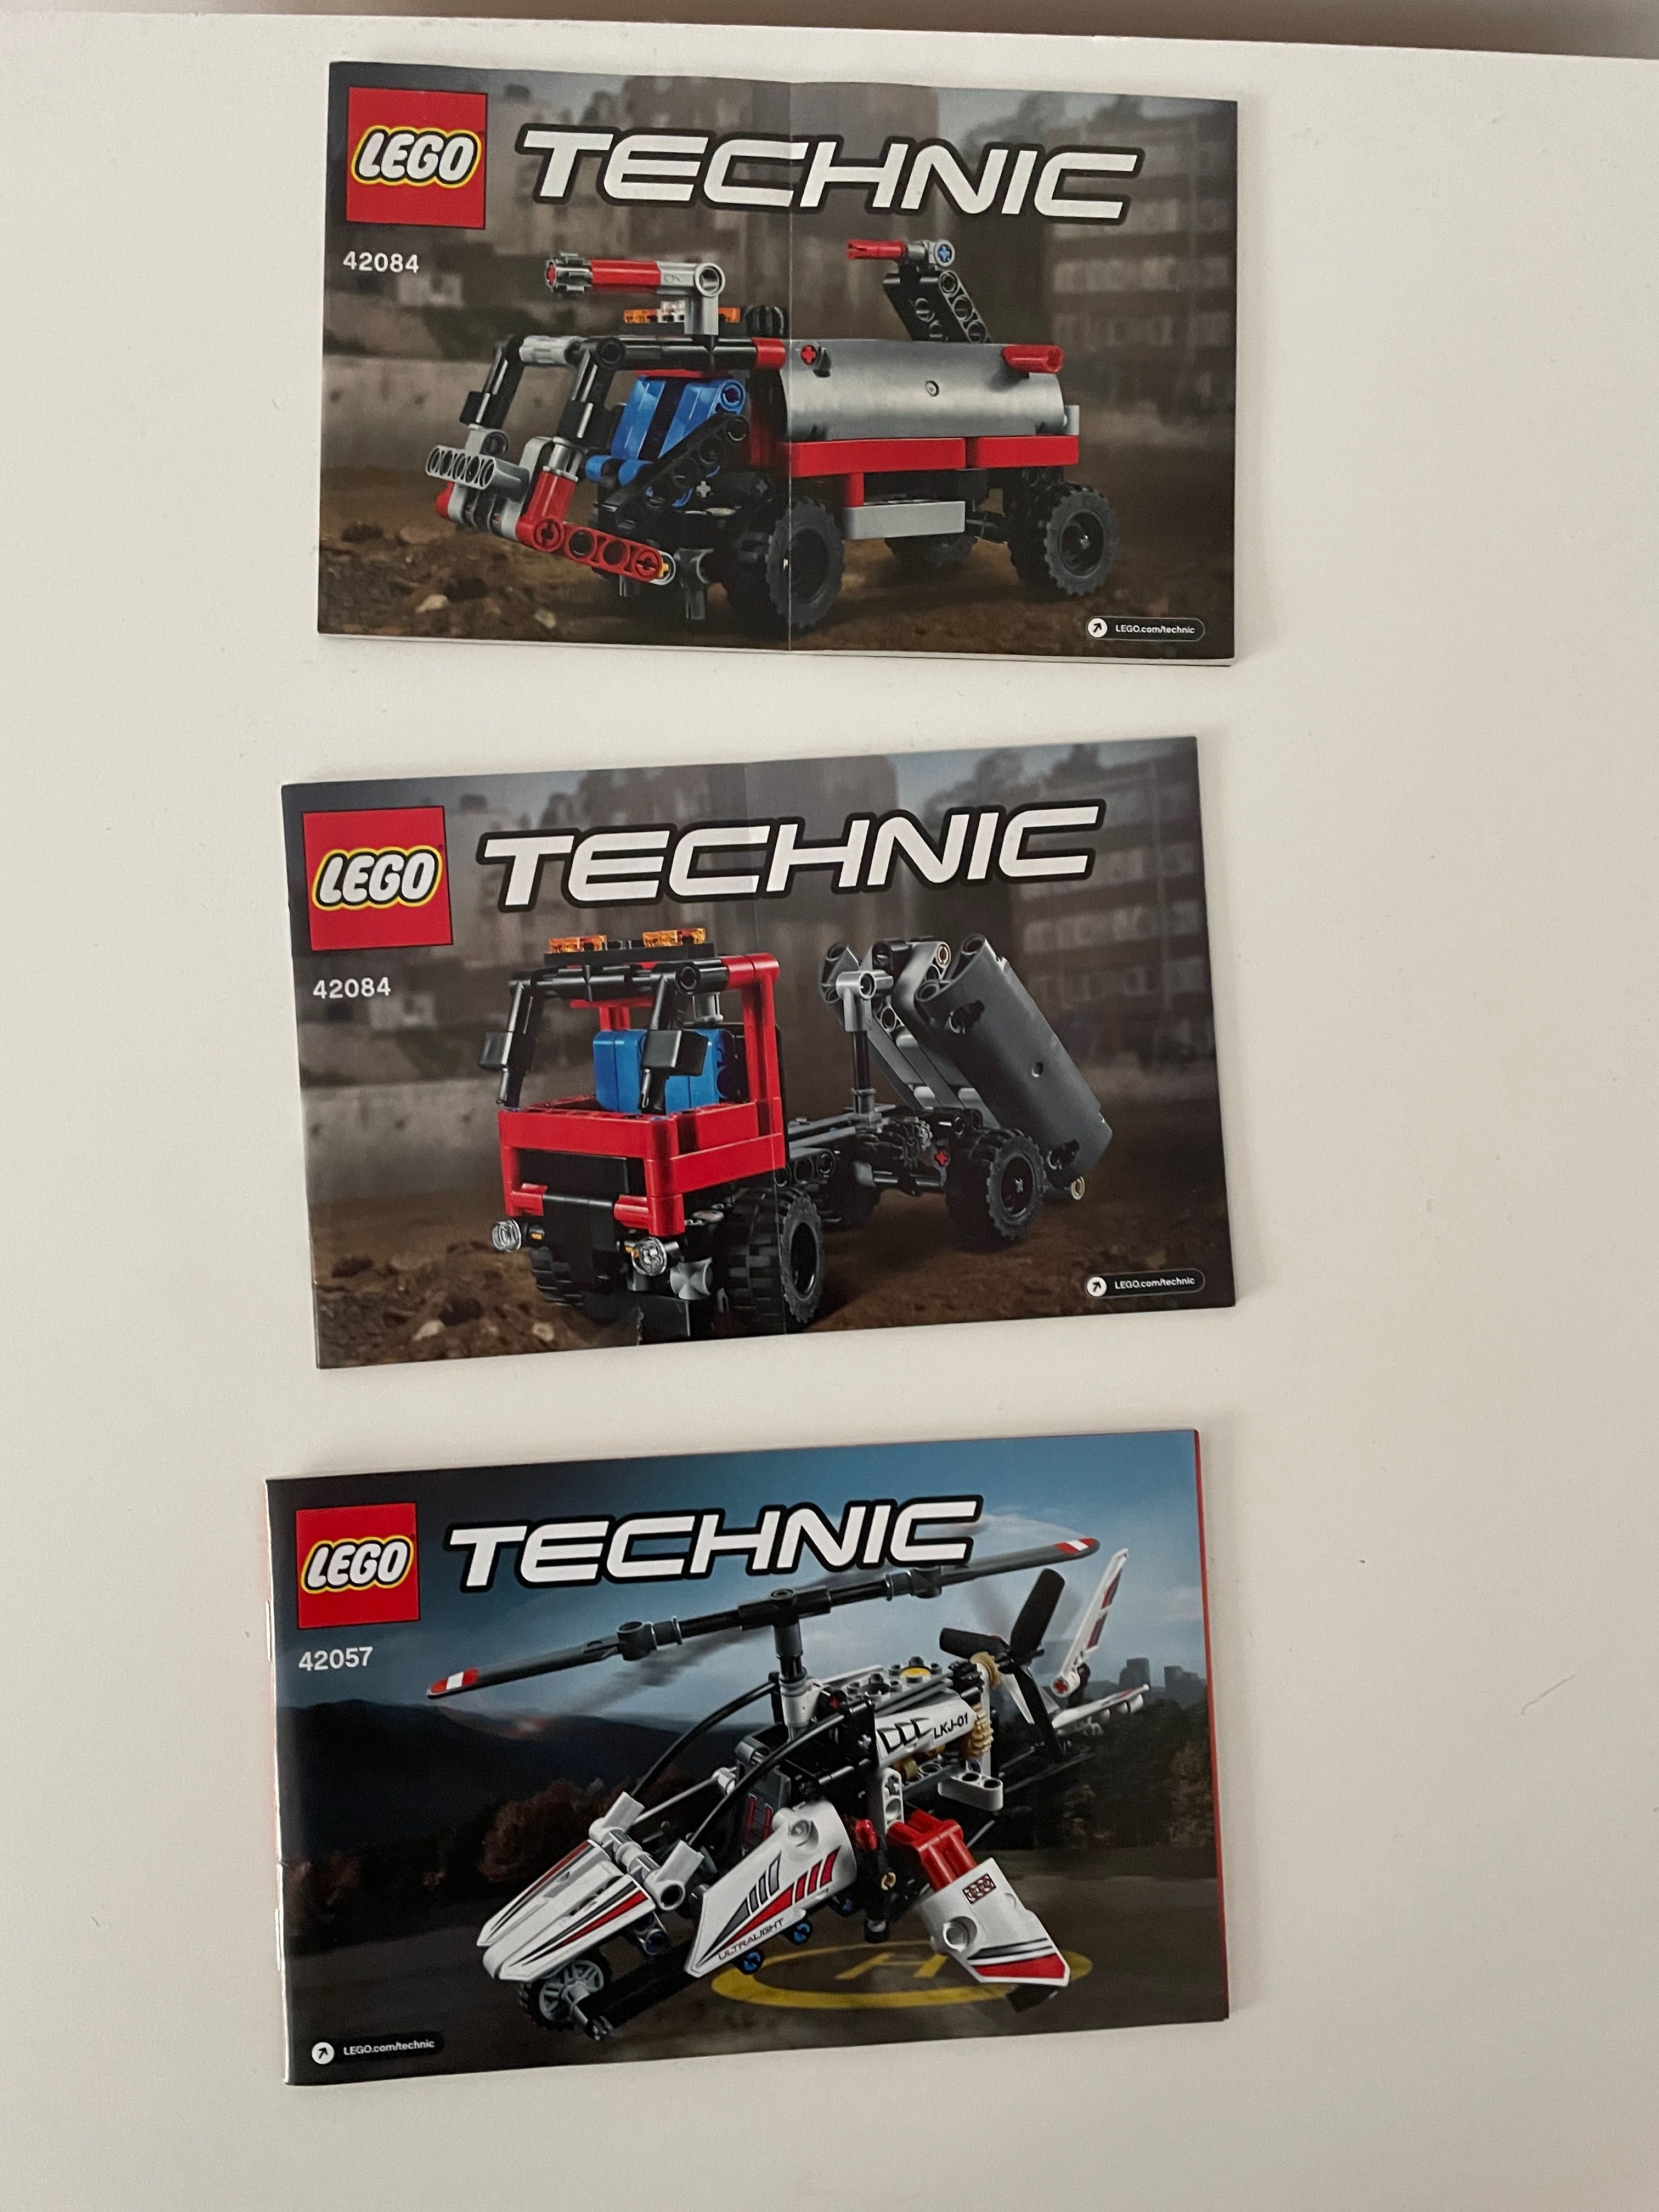 Lego tehnic 42084